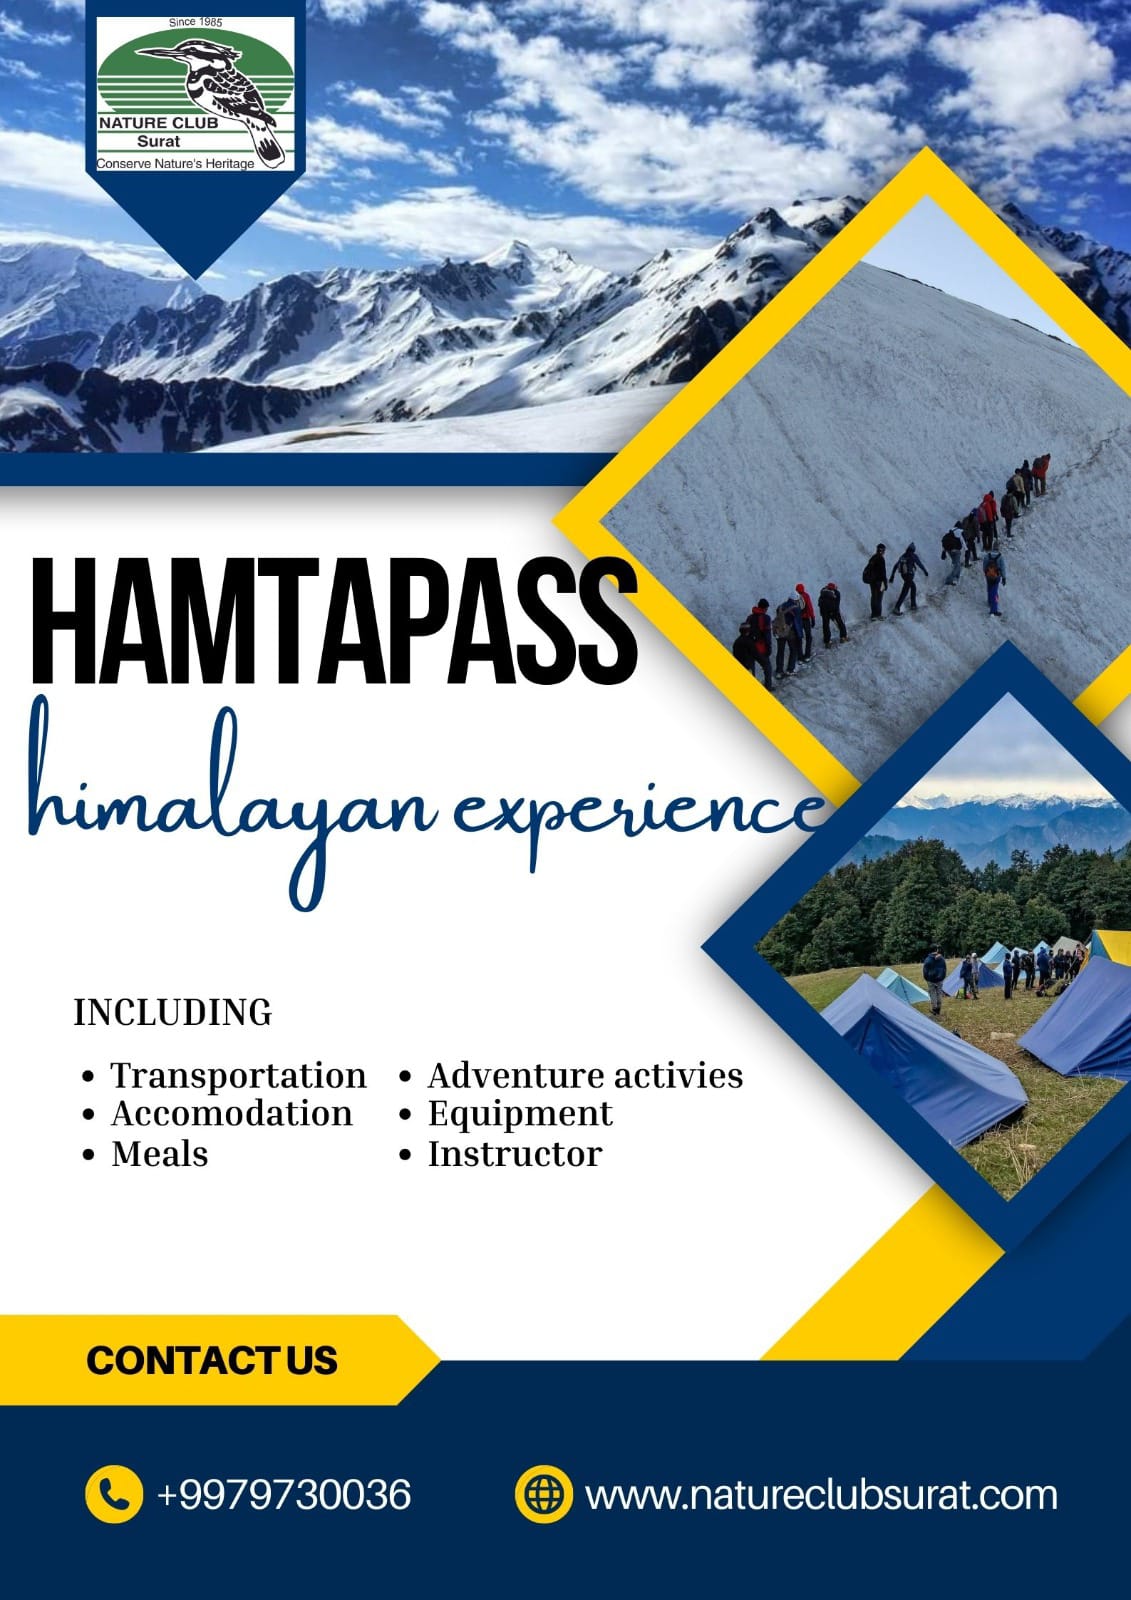 Trek to Hamtapass